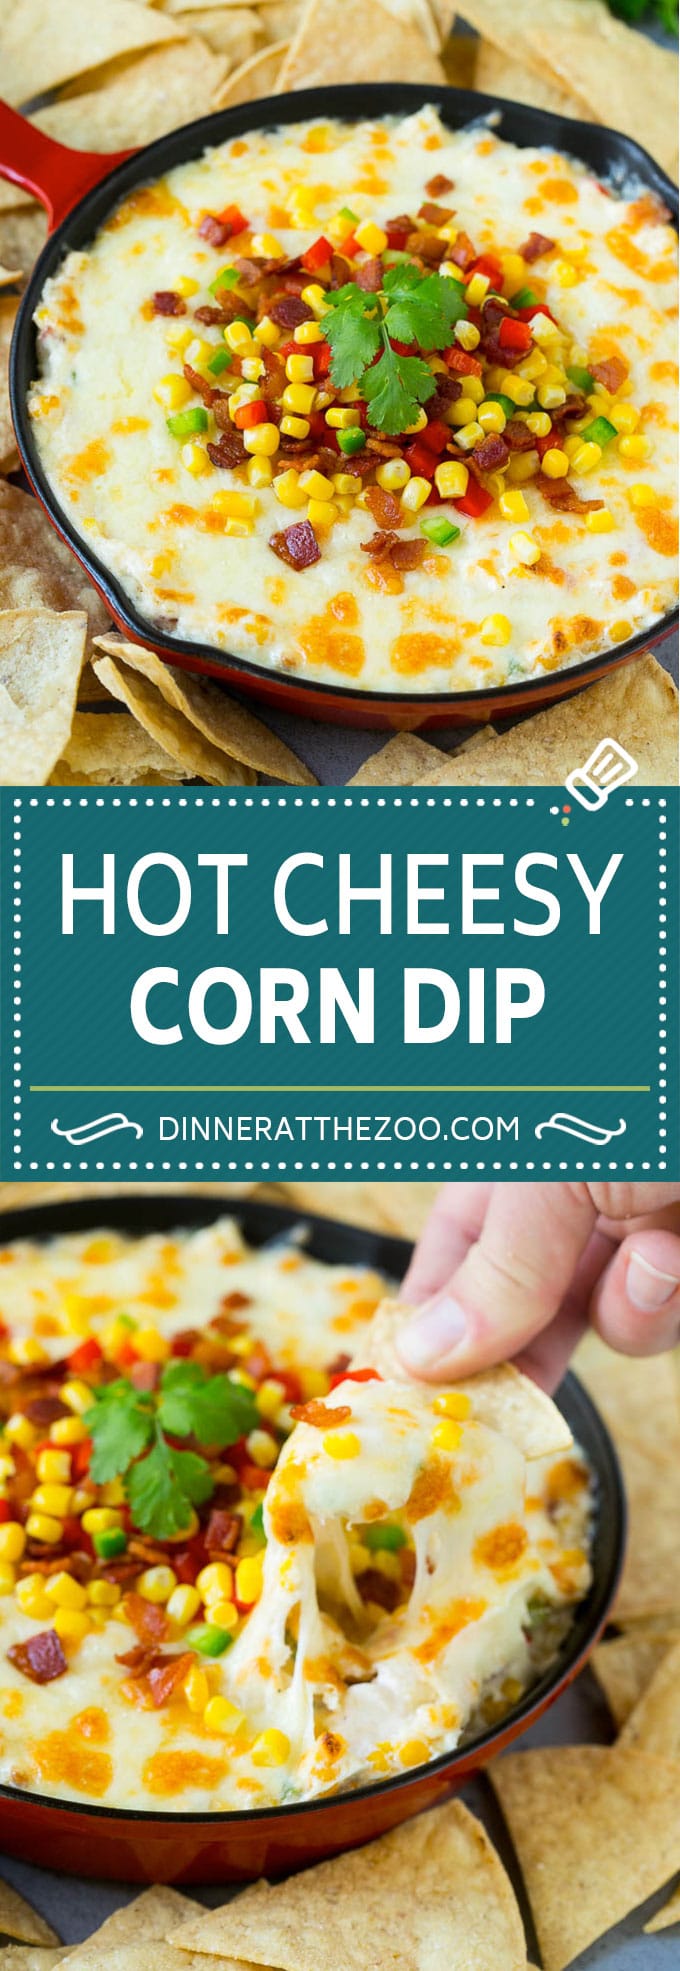 Corn Dip Recipe | Hot Cheese Dip | Bacon Dip #corn #dip #bacon #cheese #appetizer #snack #dinneratthezoo